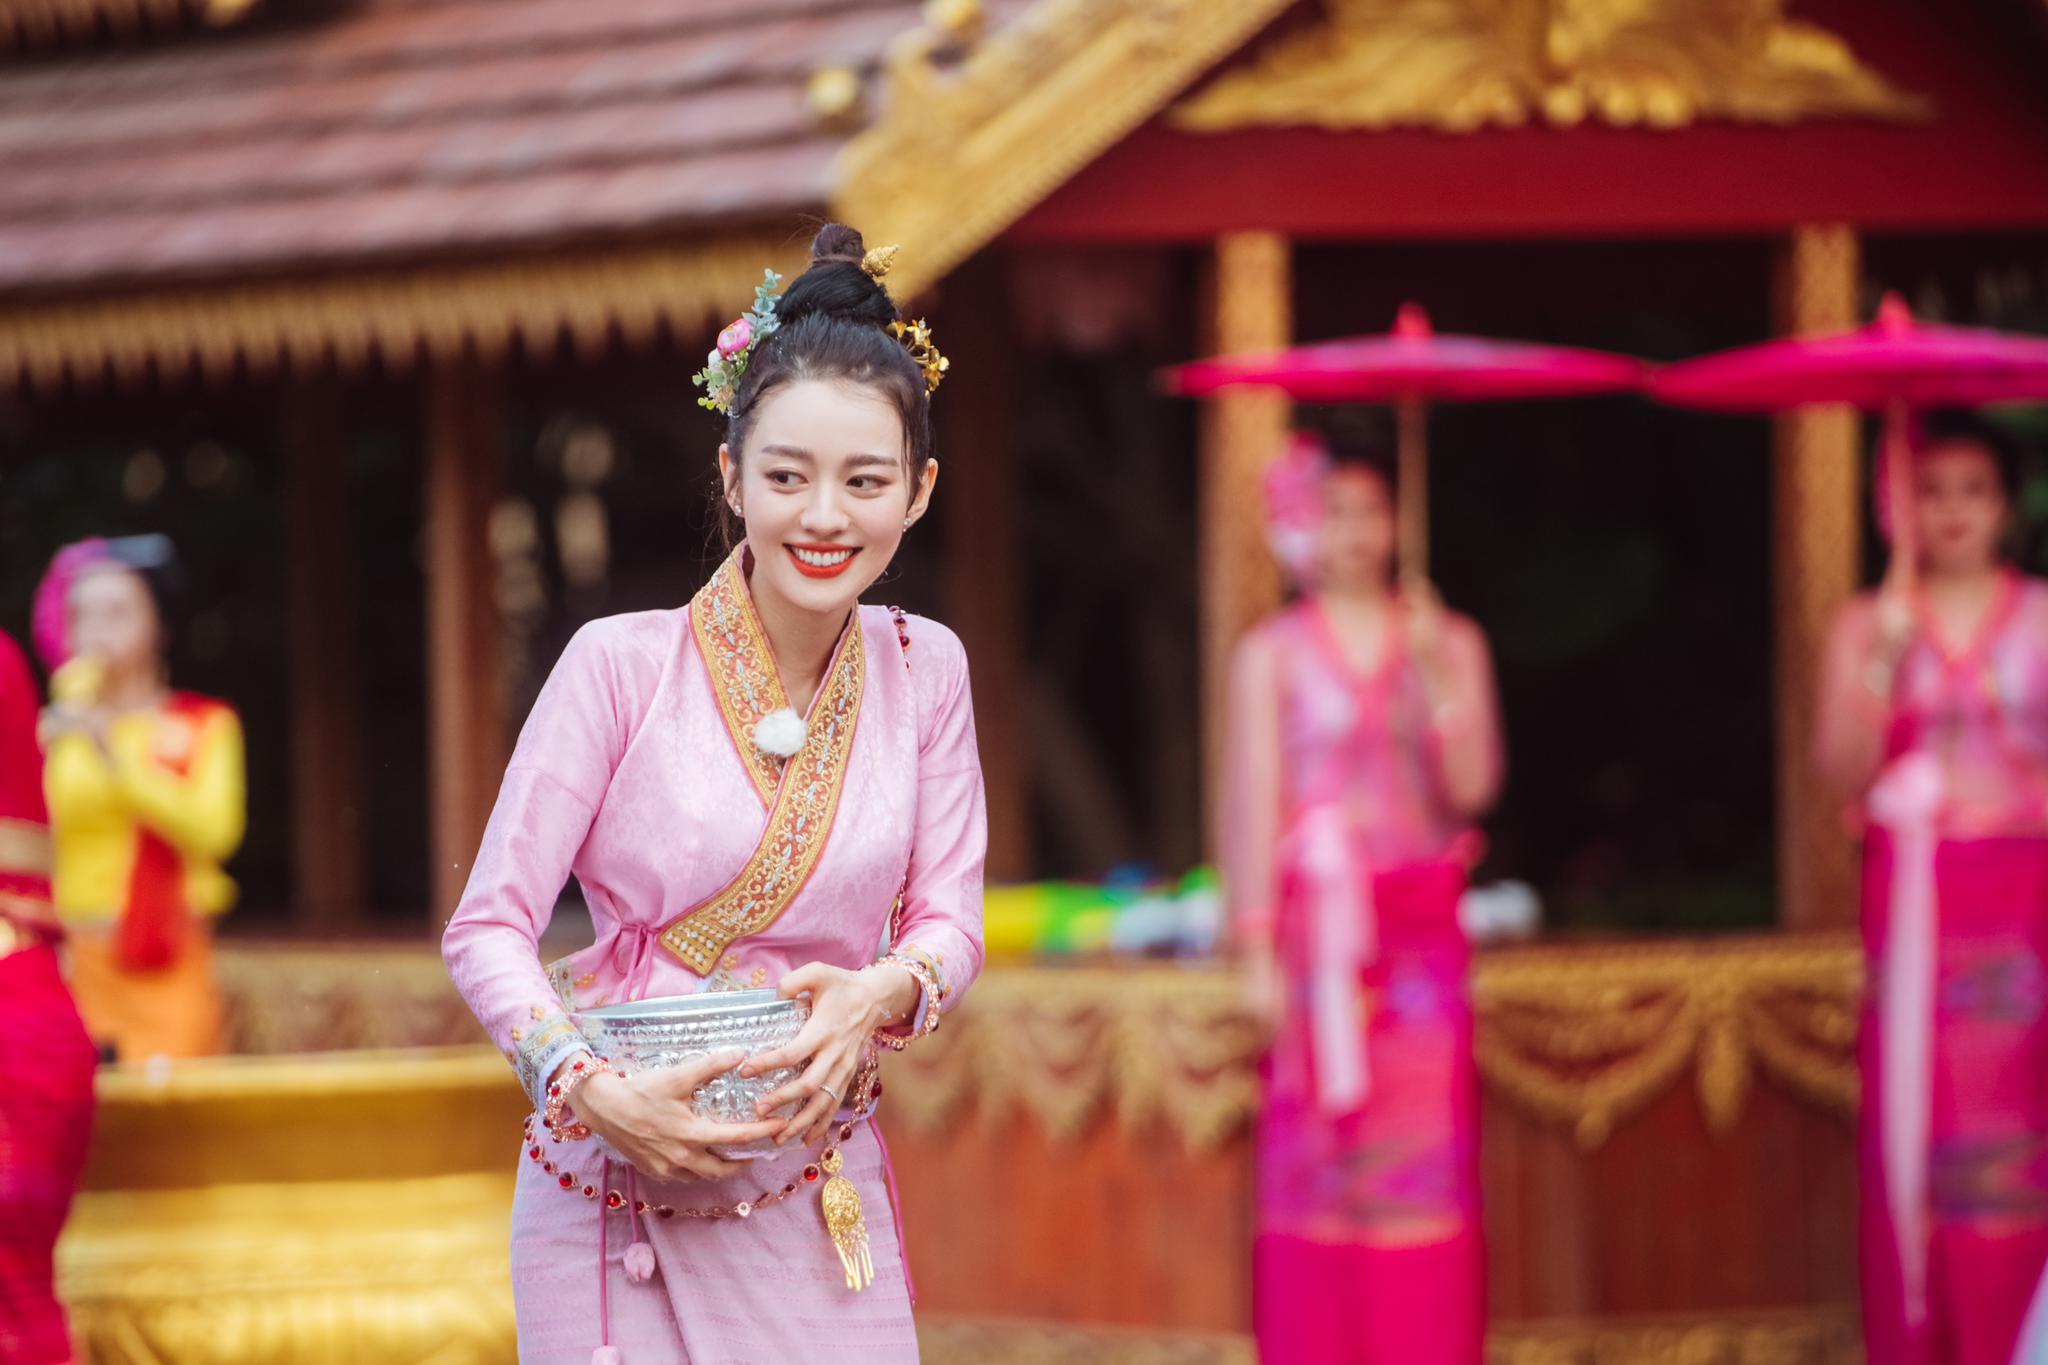 穿传统泰式服装的泰国女孩 库存图片. 图片 包括有 自然, 聚会所, 纵向, 骑马, 夫人, 佛教, 舞蹈 - 174632489